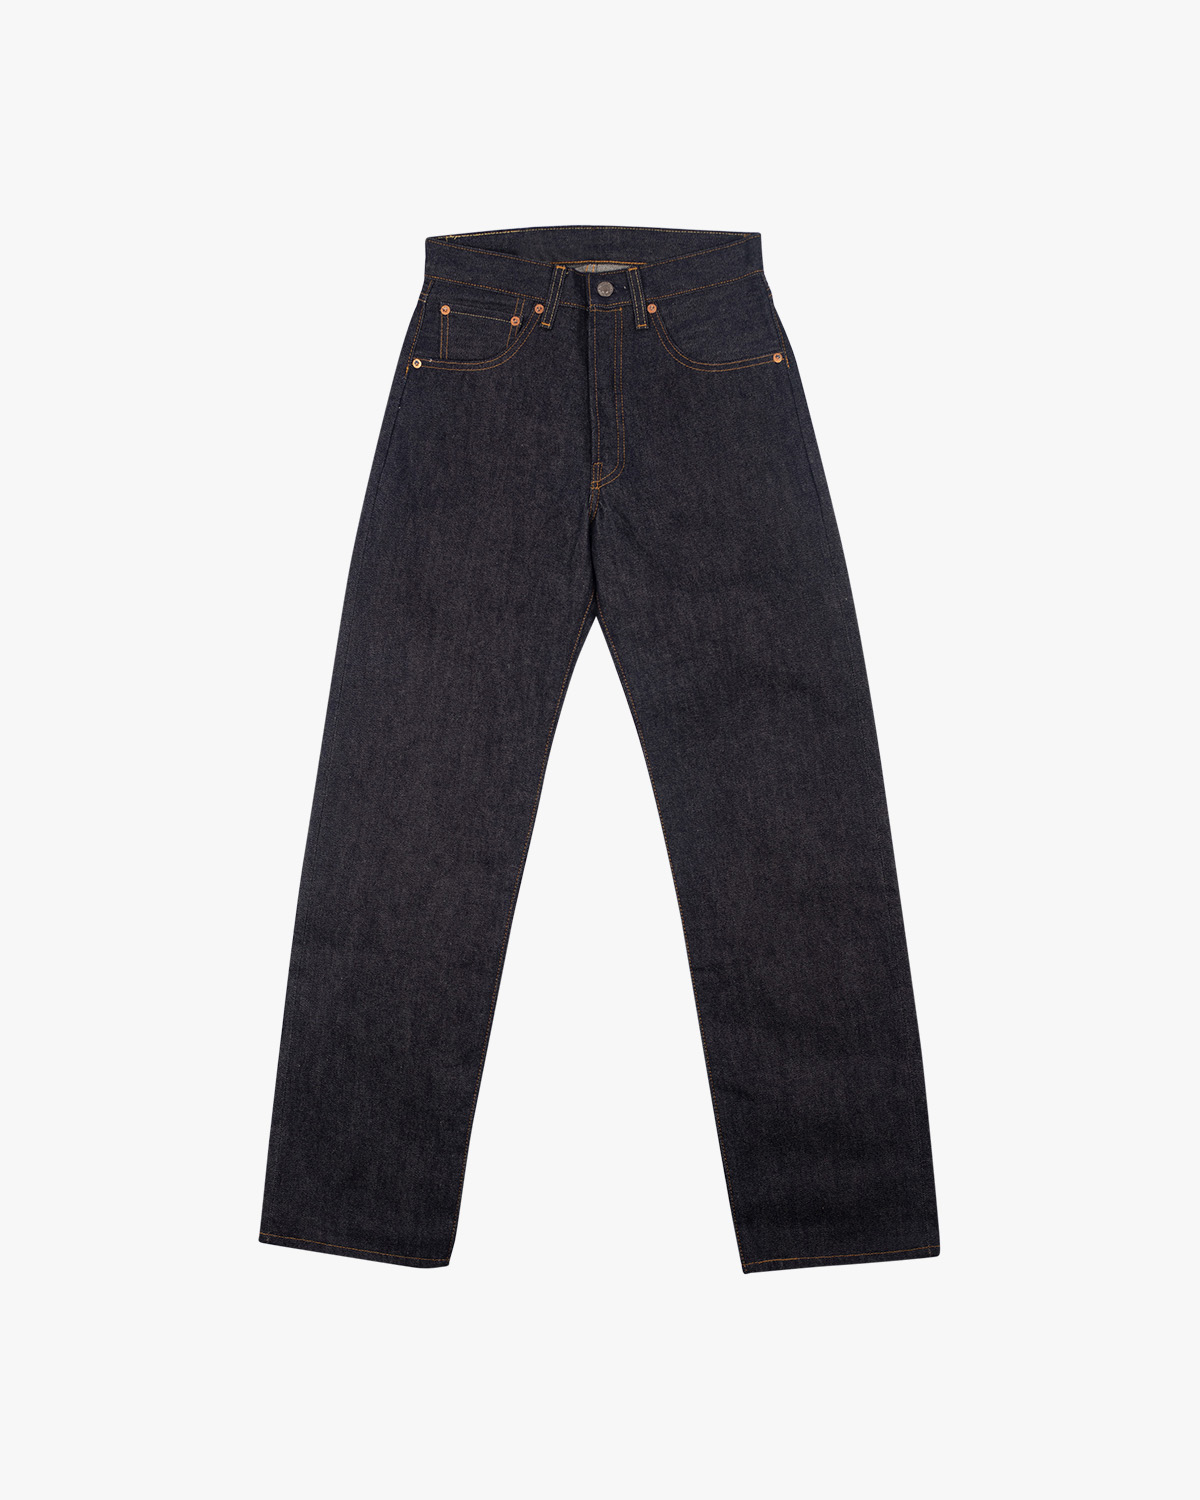 1955 501 Jeans Rigid | PRGRSS Store